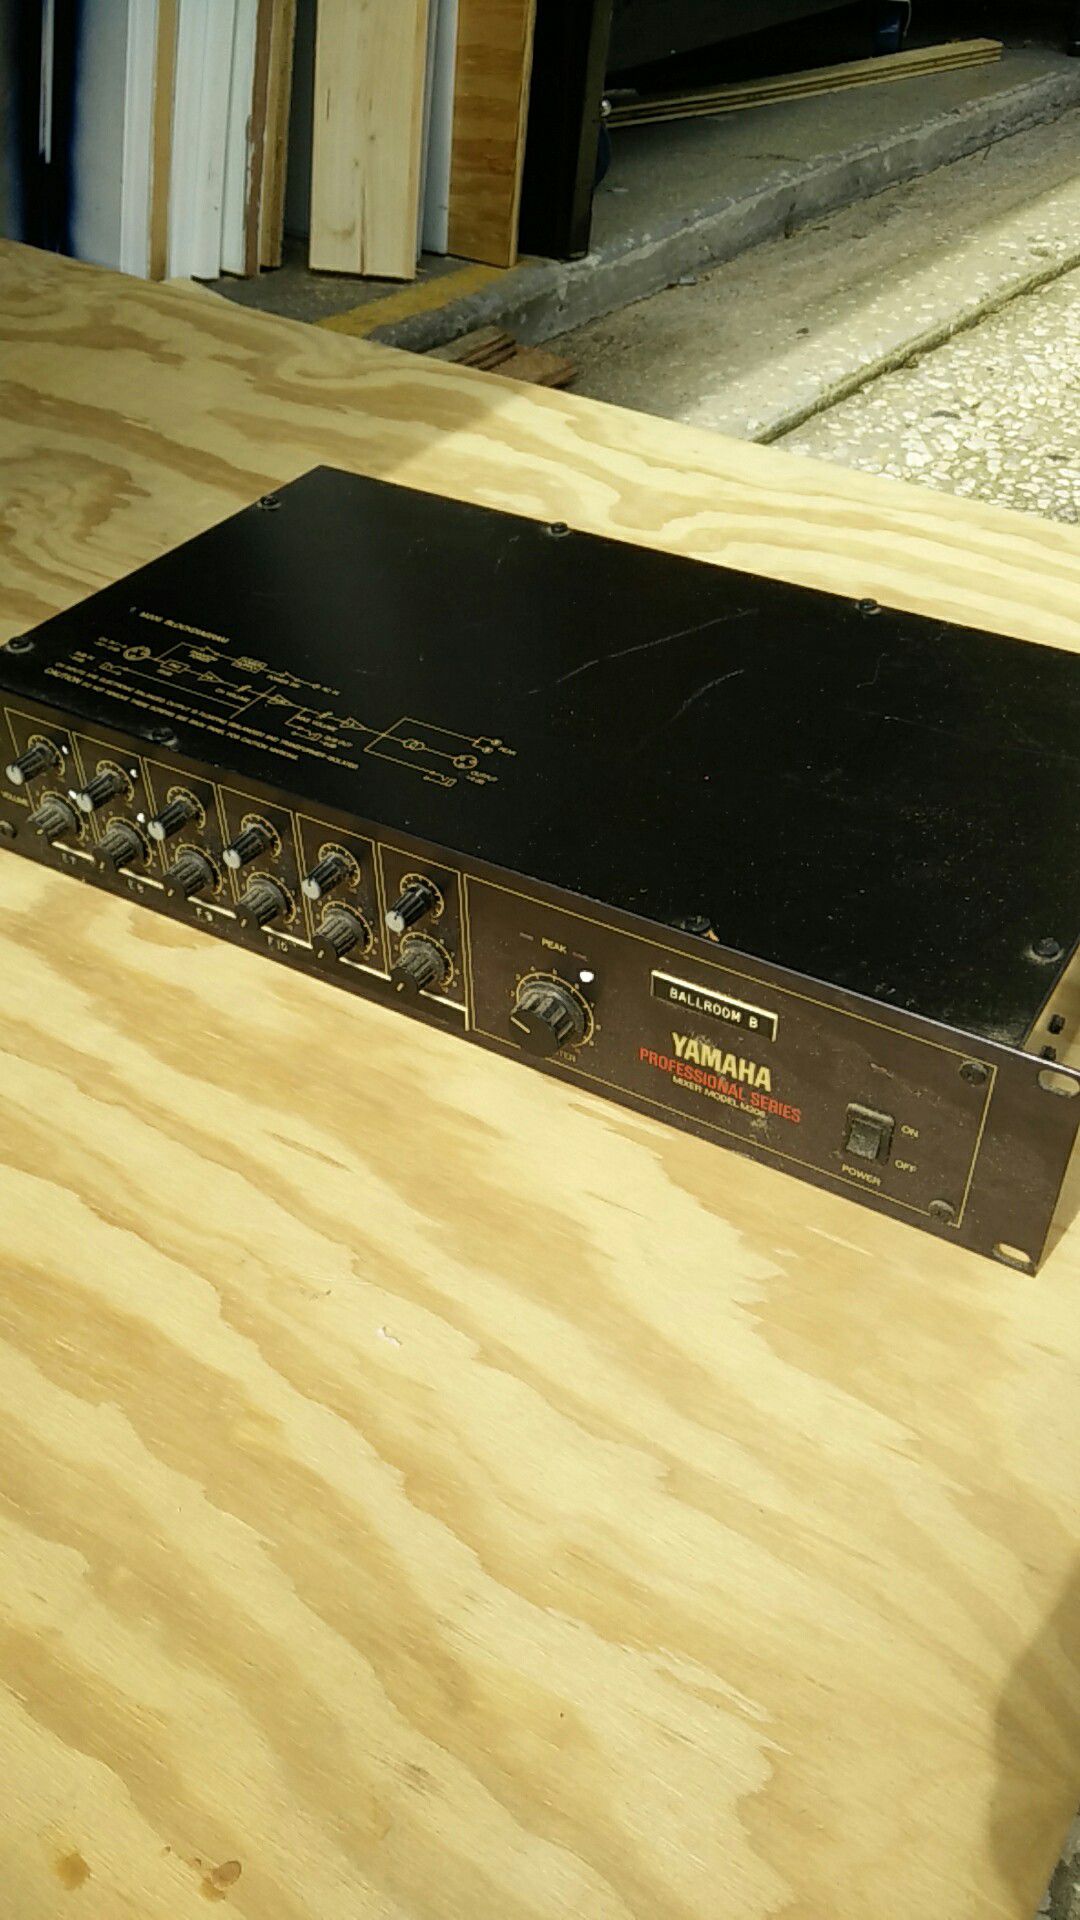 Yamaha M206 mic/line mixer